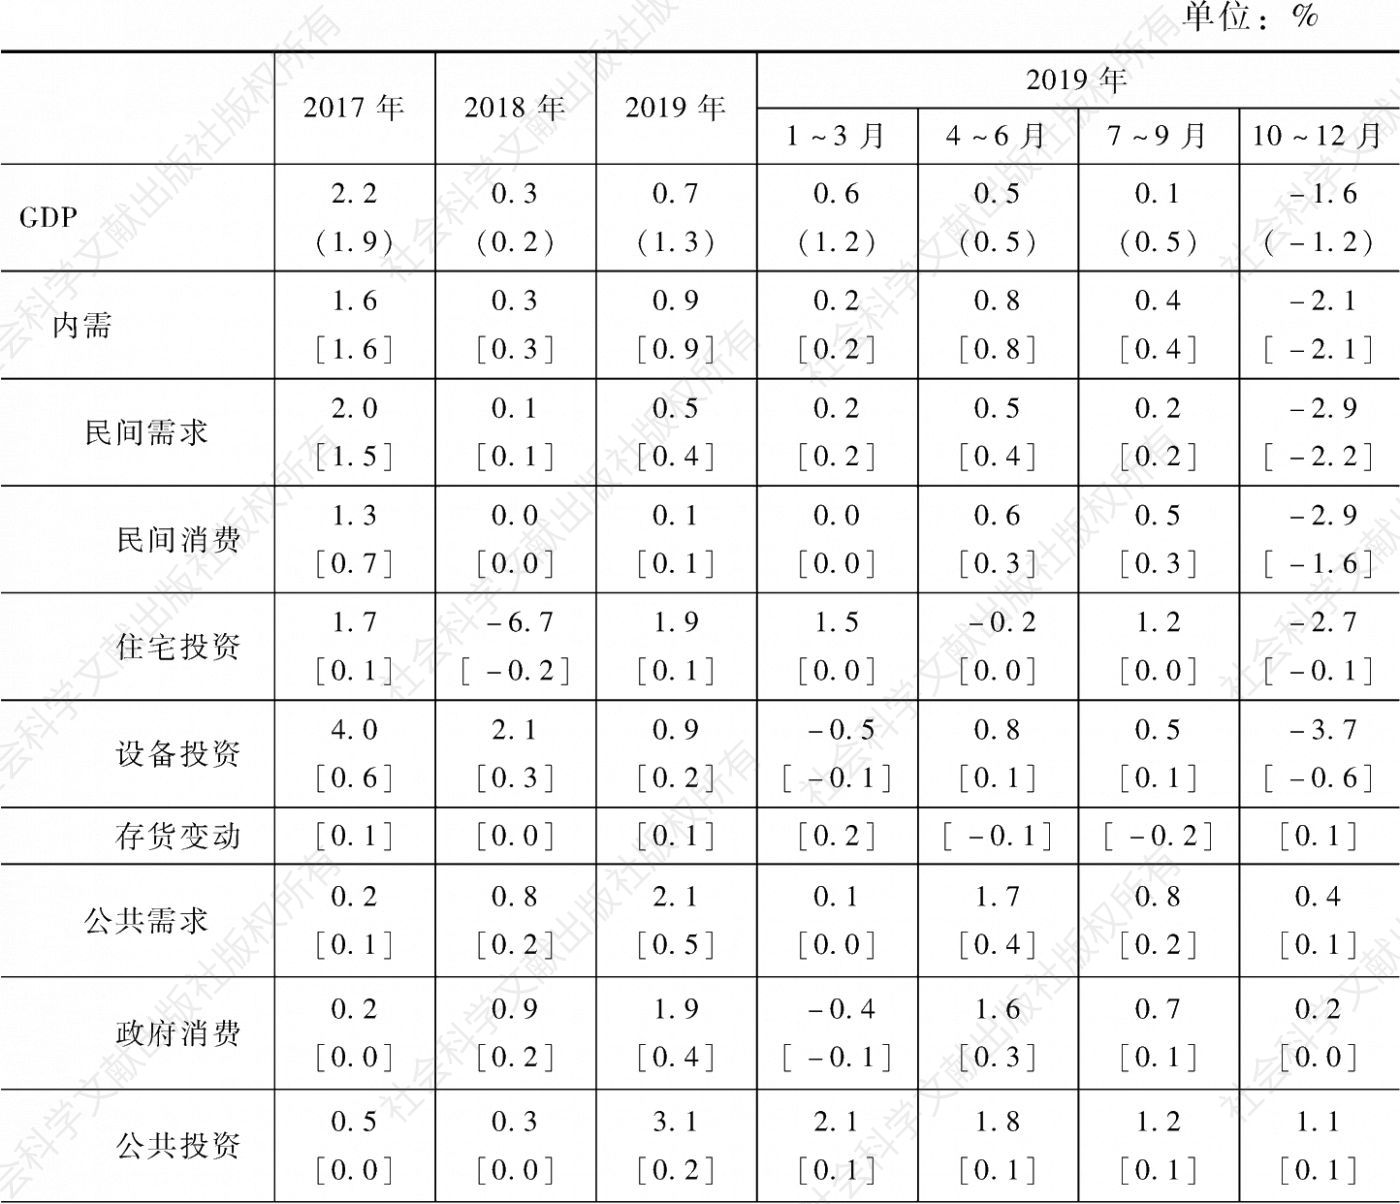 表5-3 2017～2019年日本实际GDP增长率